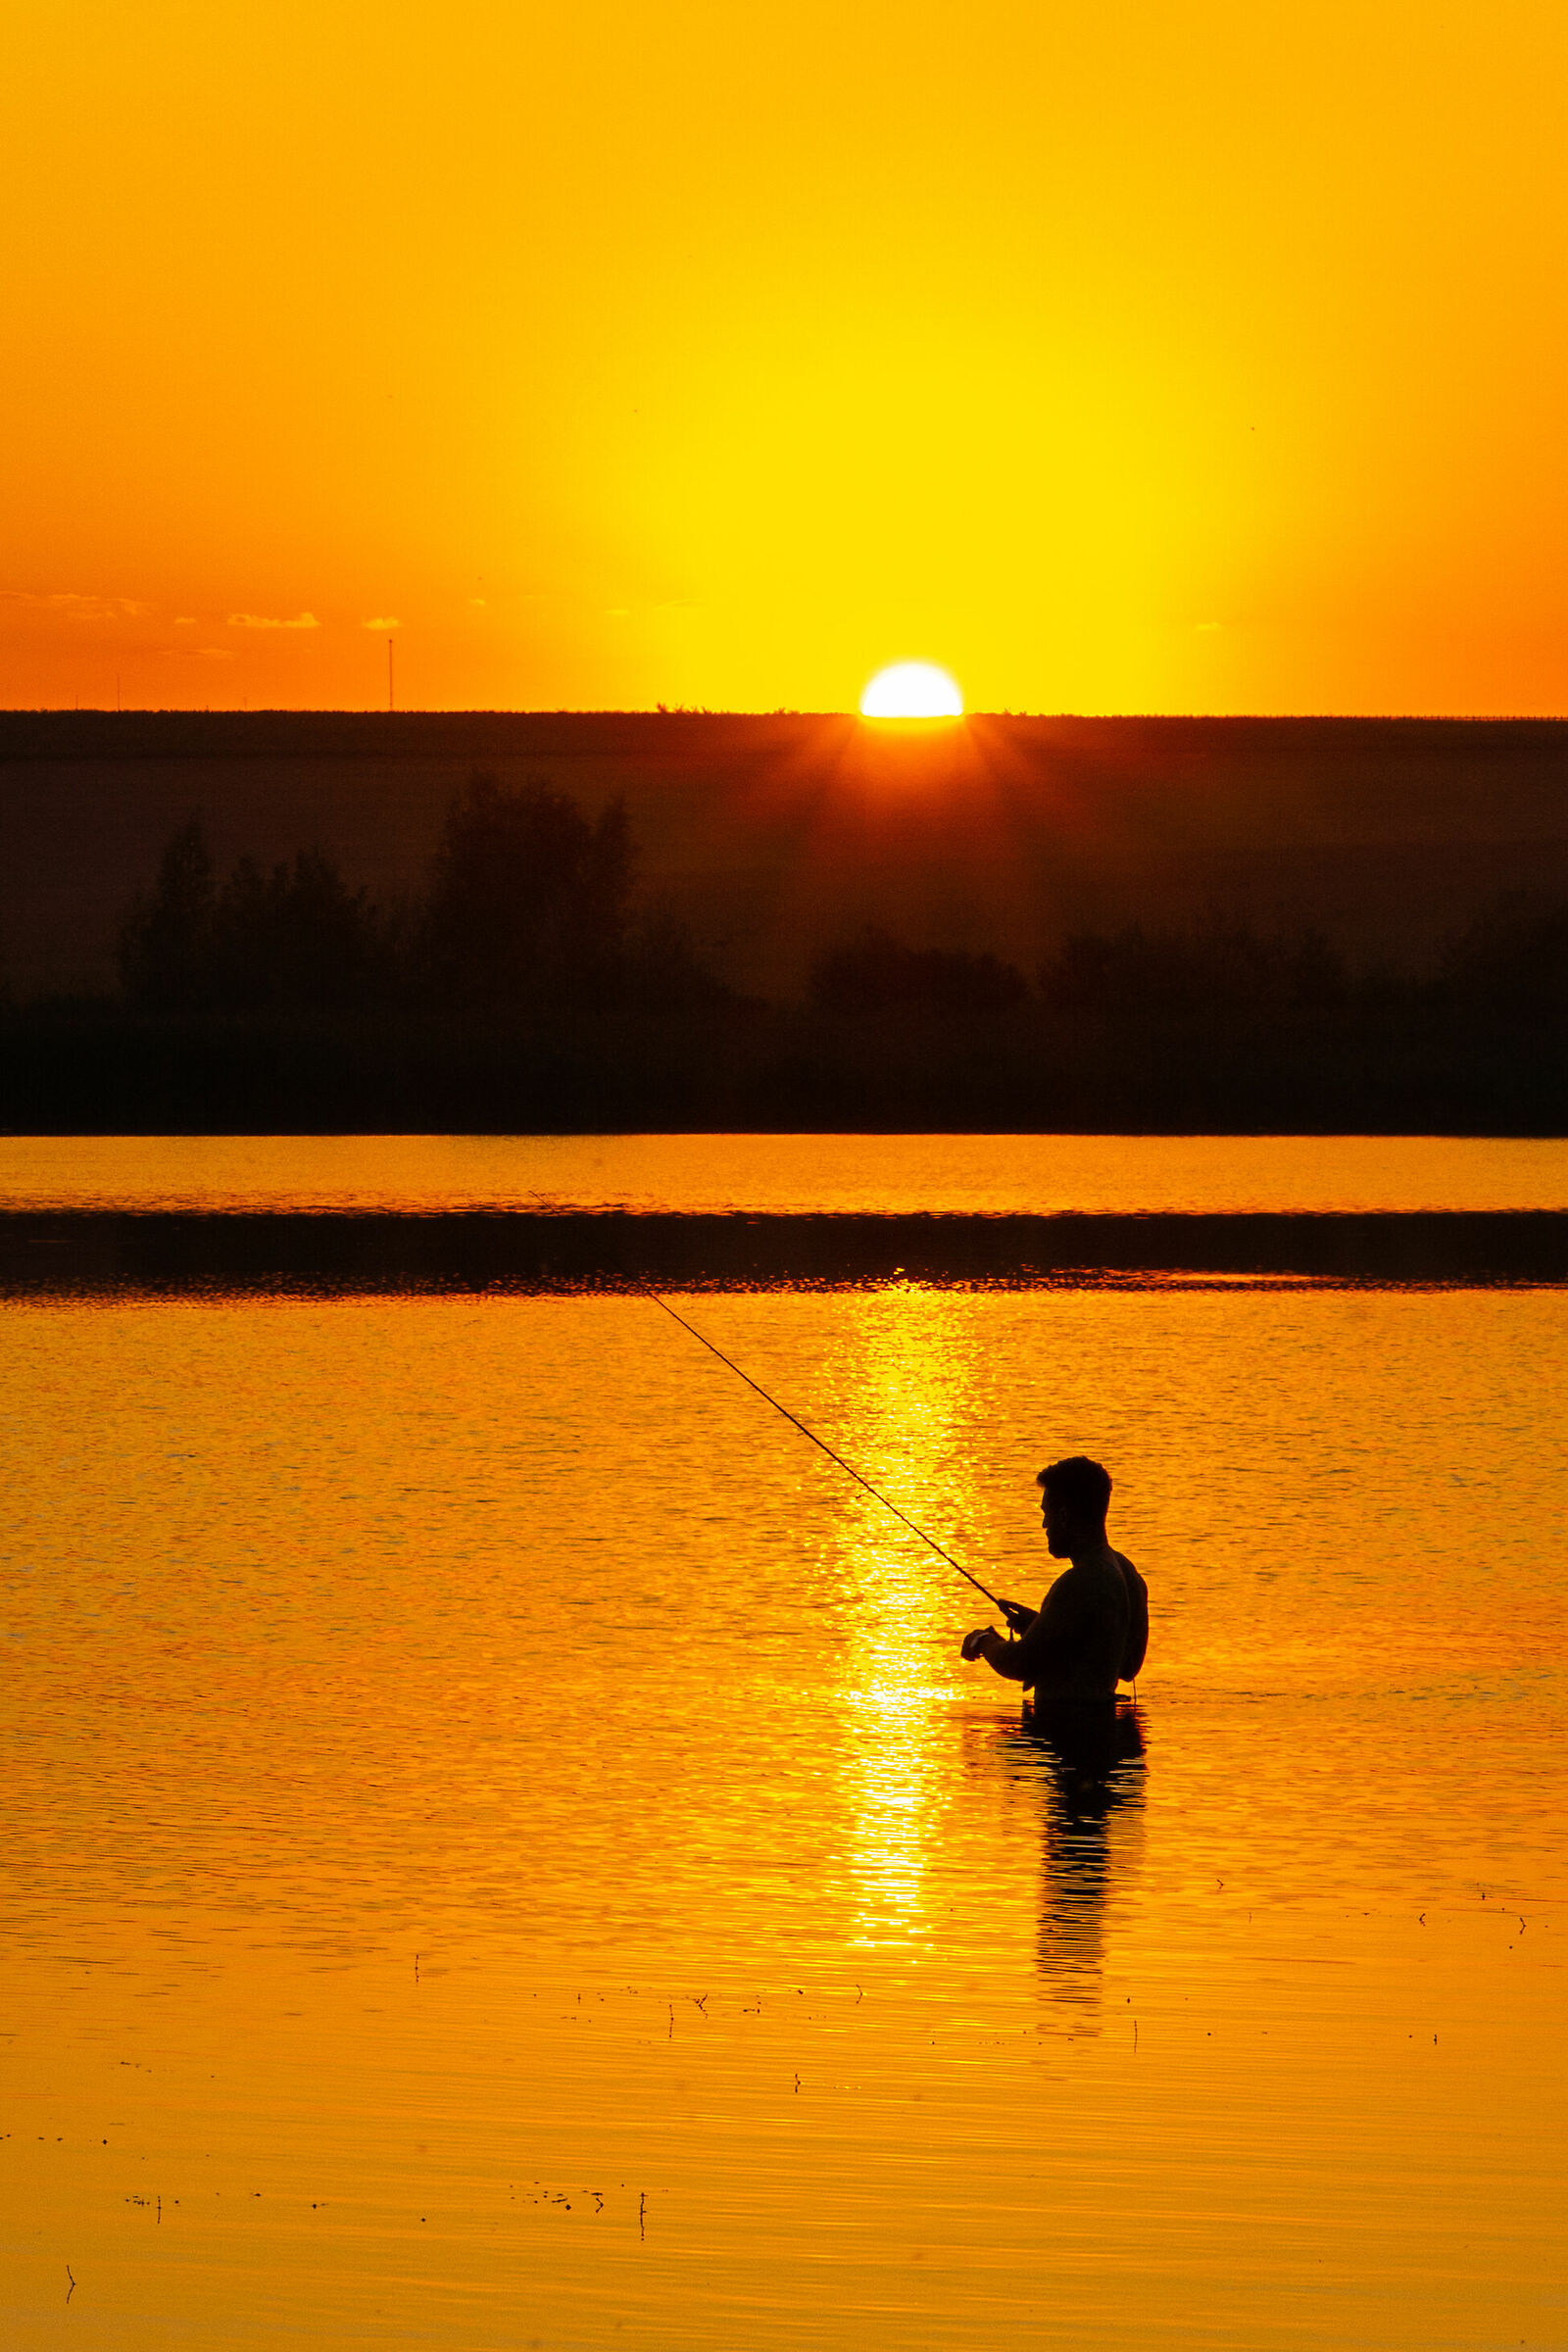 Sunset fishing on lake...